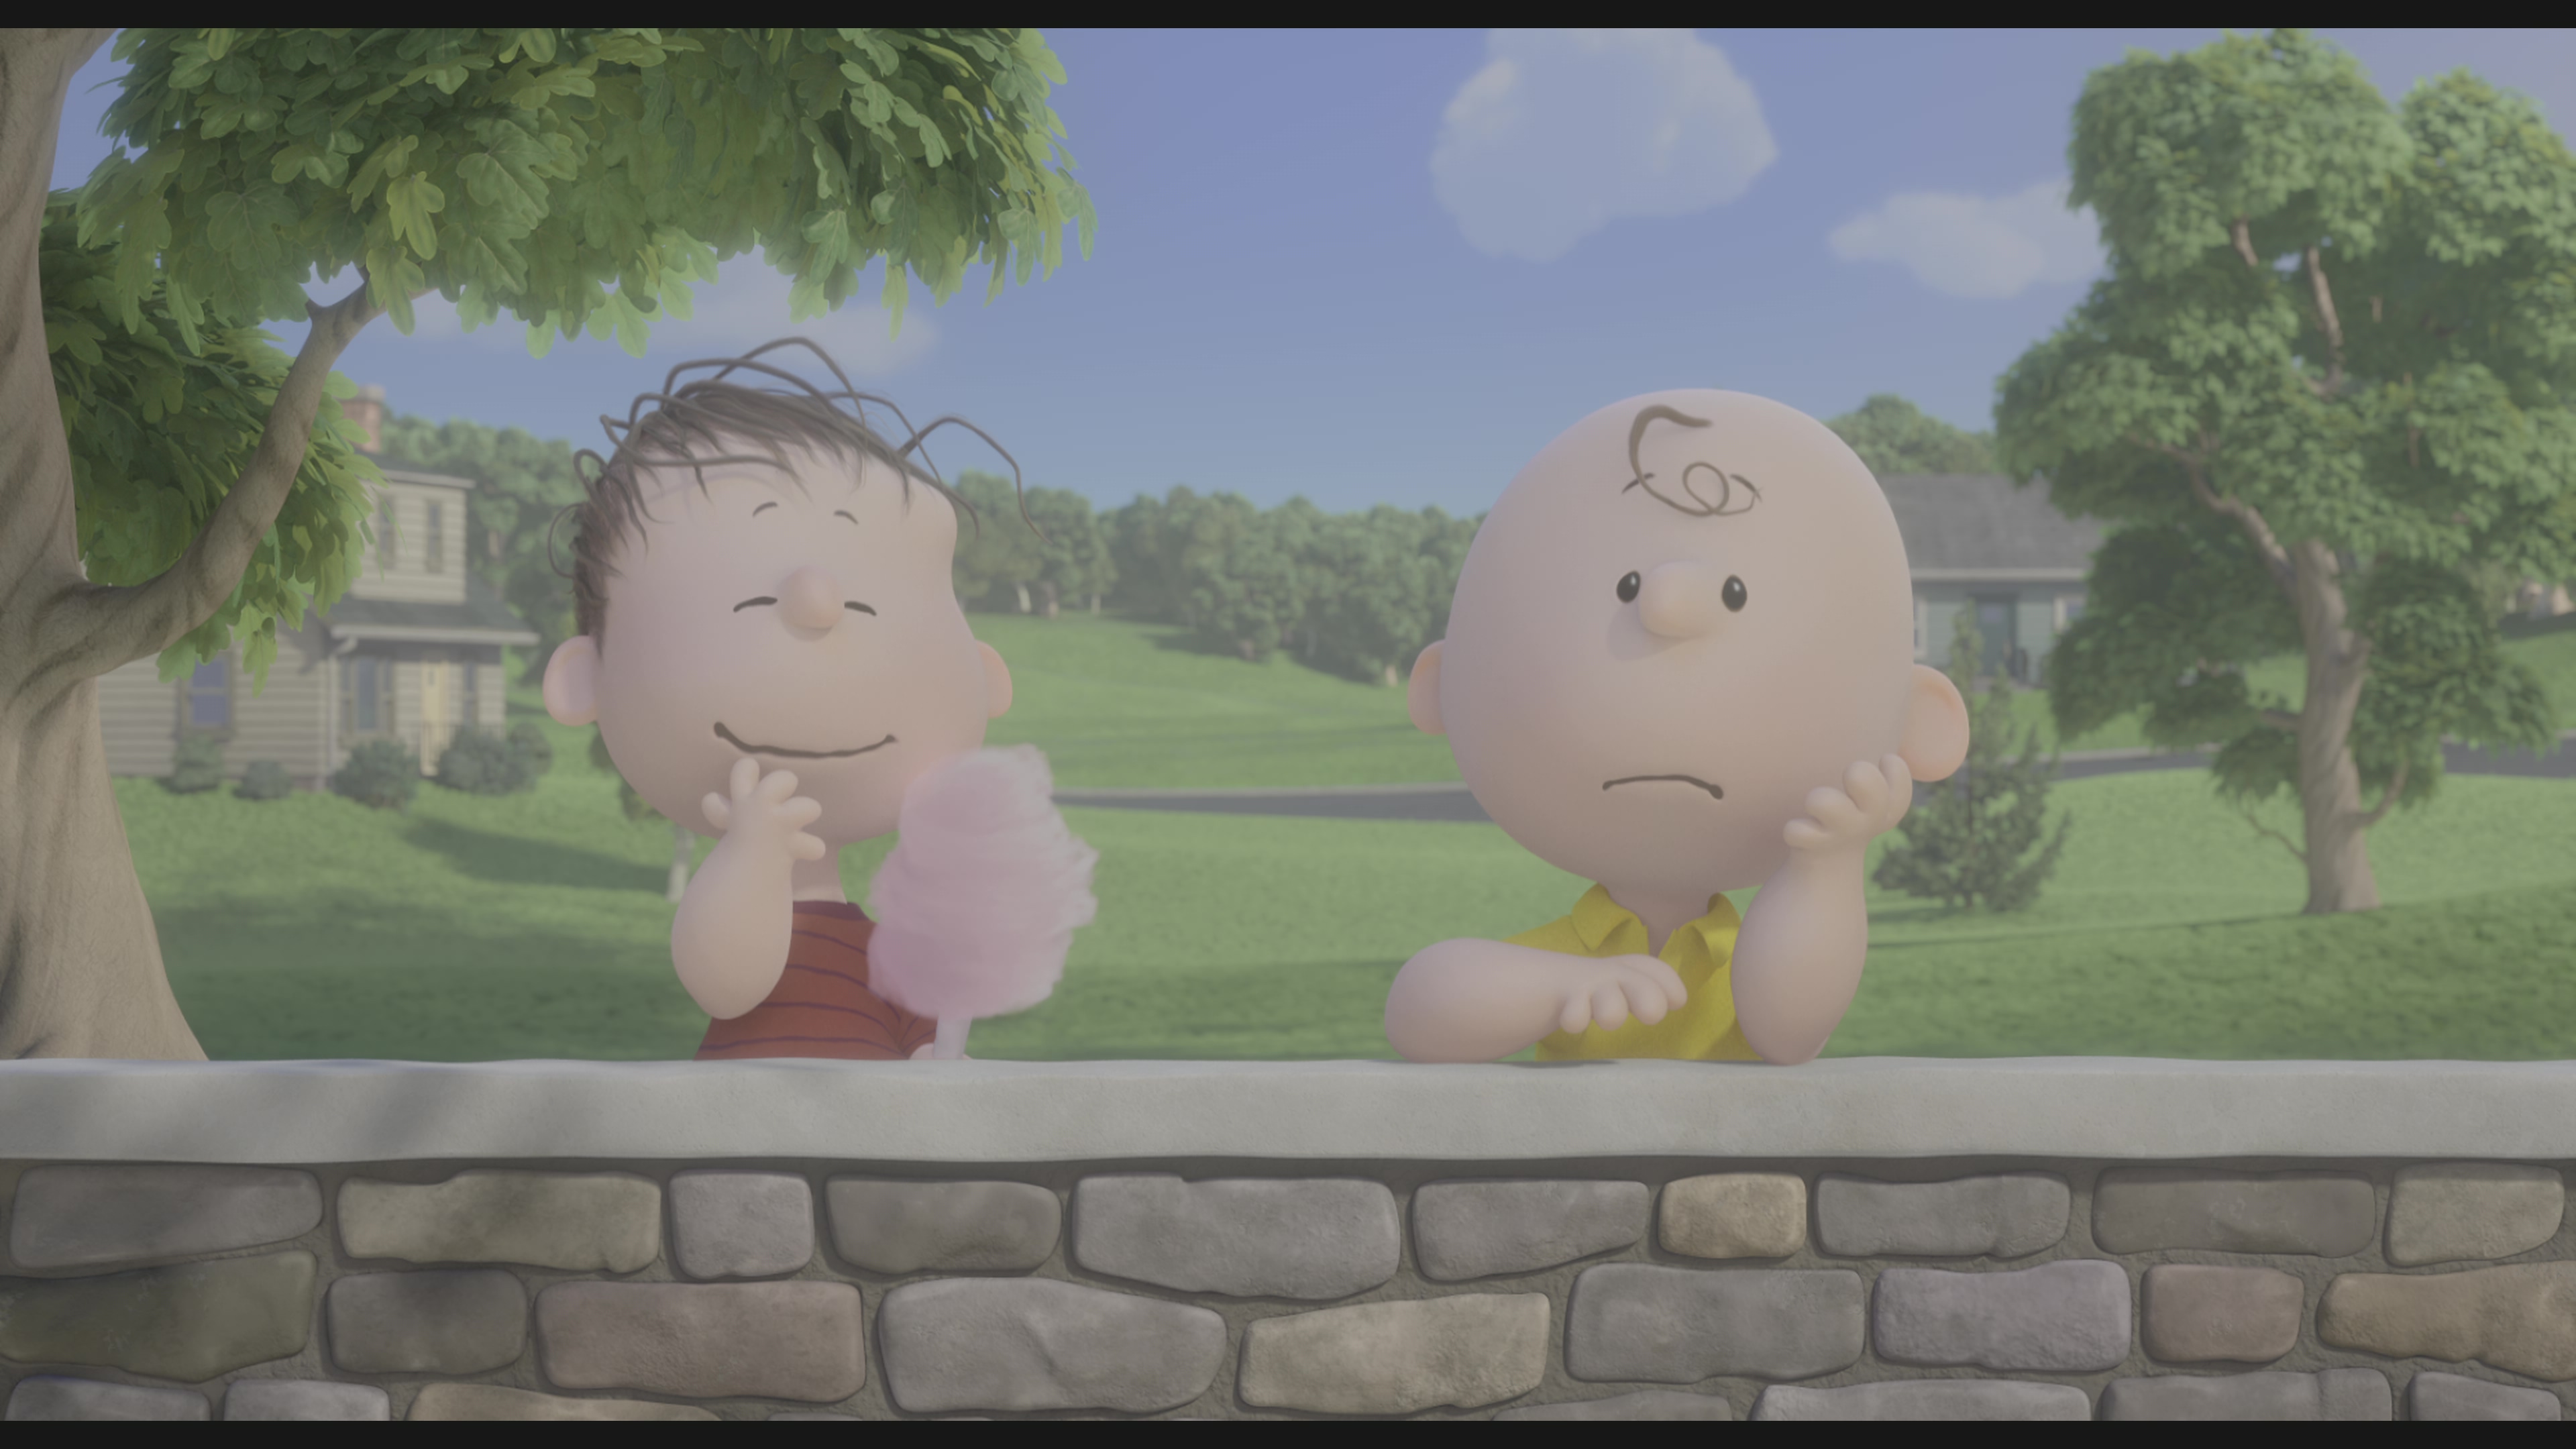 [史努比·花生大电影].The.Peanuts.Movie.2015.UHD.BluRay.2160p.HEVC.TrueHD.7.1-COASTER    45.39G-16.jpg